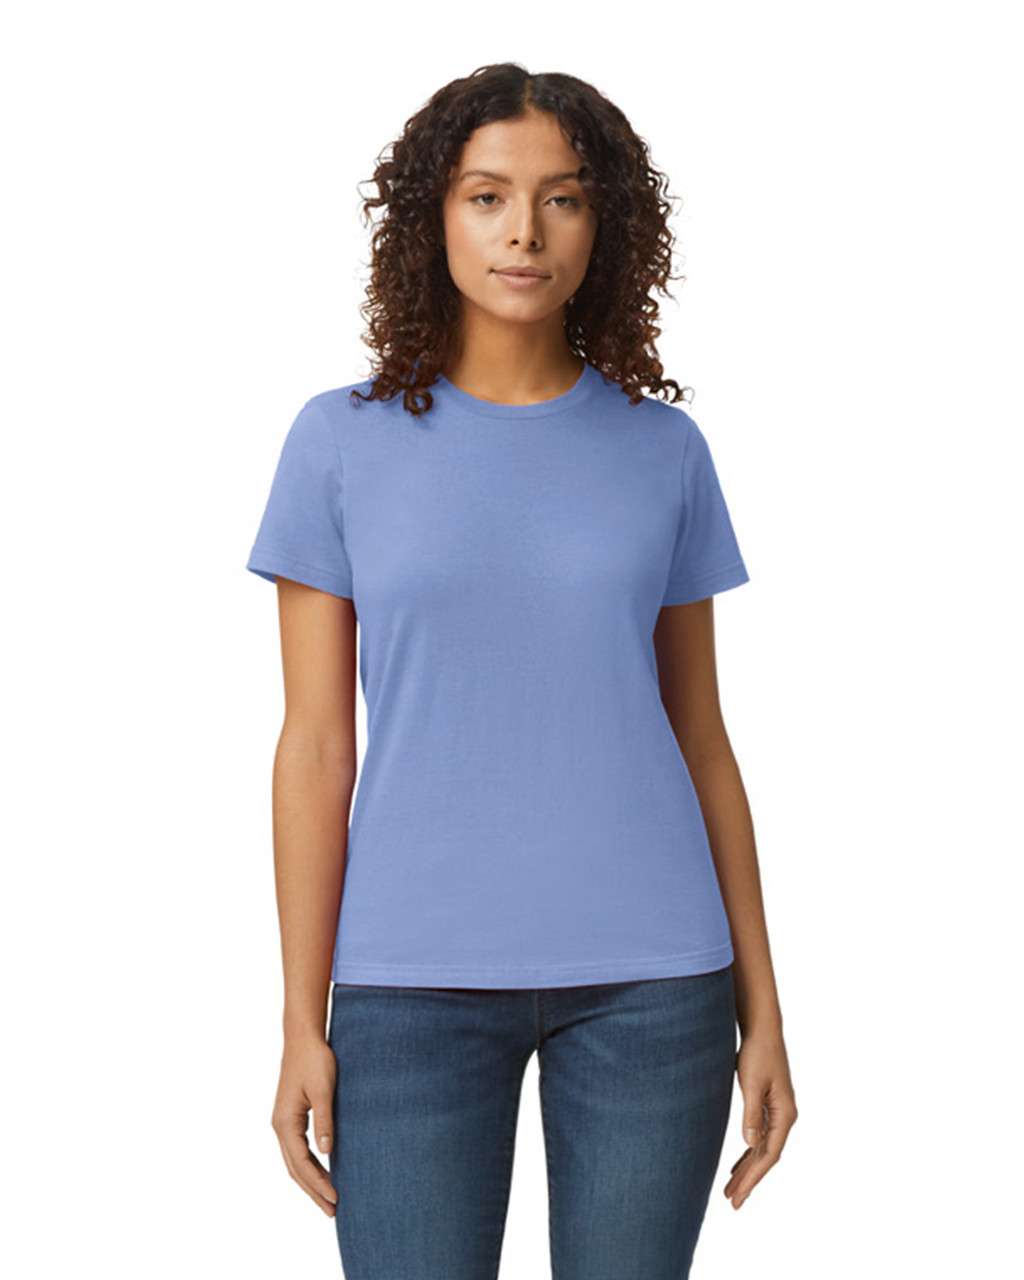 Gildan Softstyle® Midweight Women's T-shirt - Violett